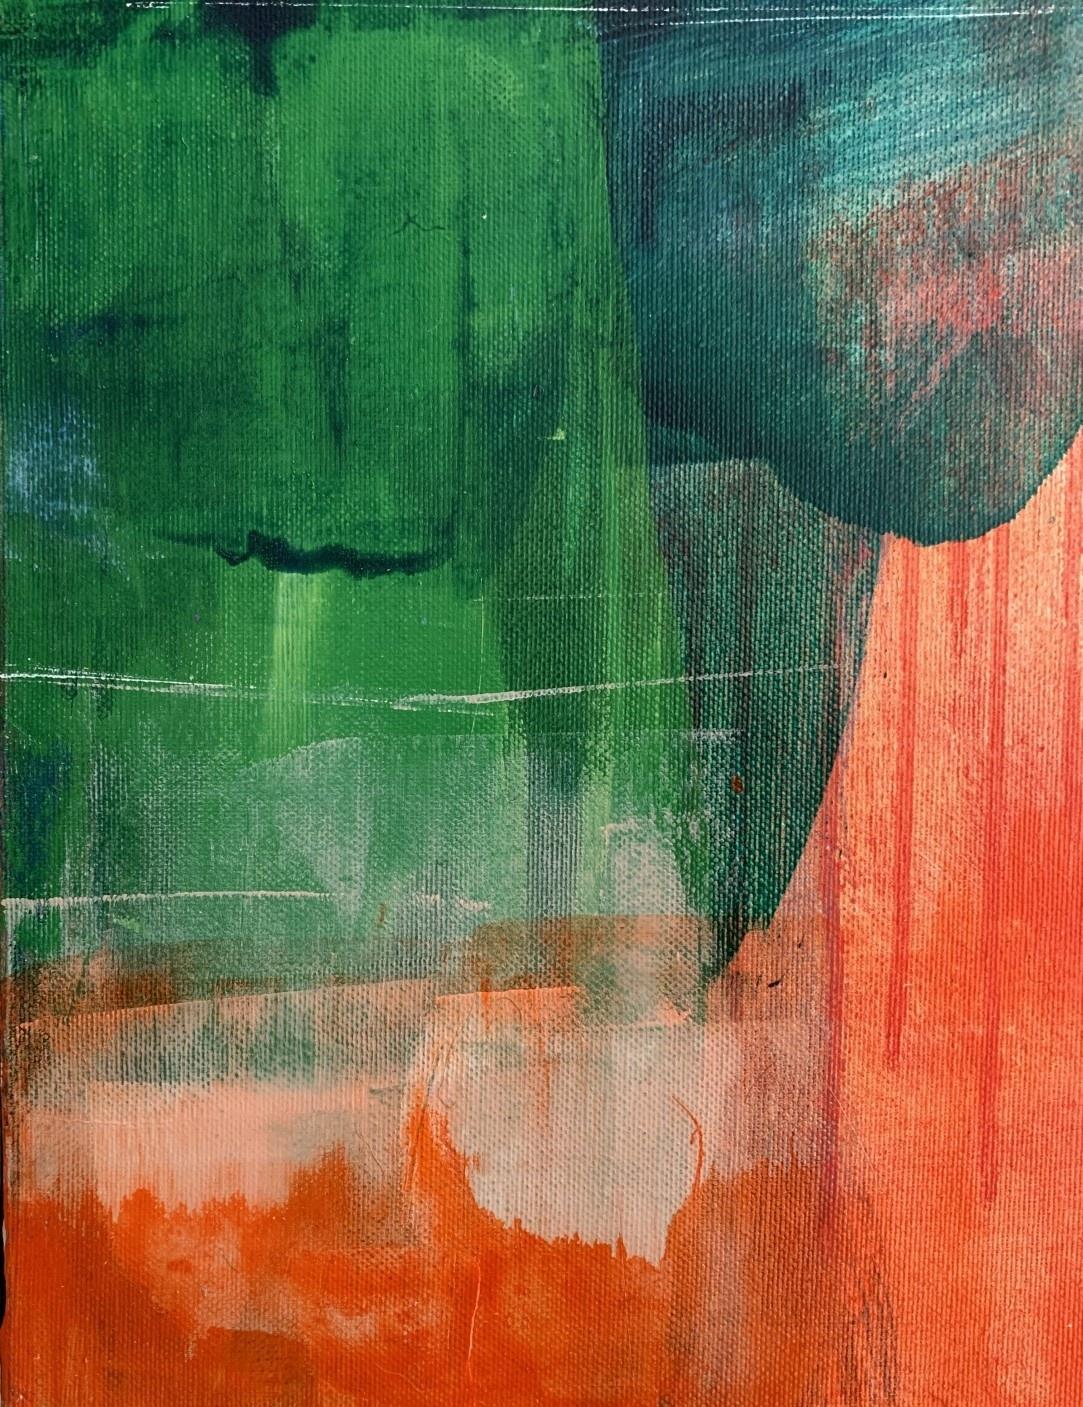 Grüner Wald - Zeitgenössische abstrakte Malerei Acrylfarben, polnischer Künstler – Painting von Anna Masiul-Gozdecka